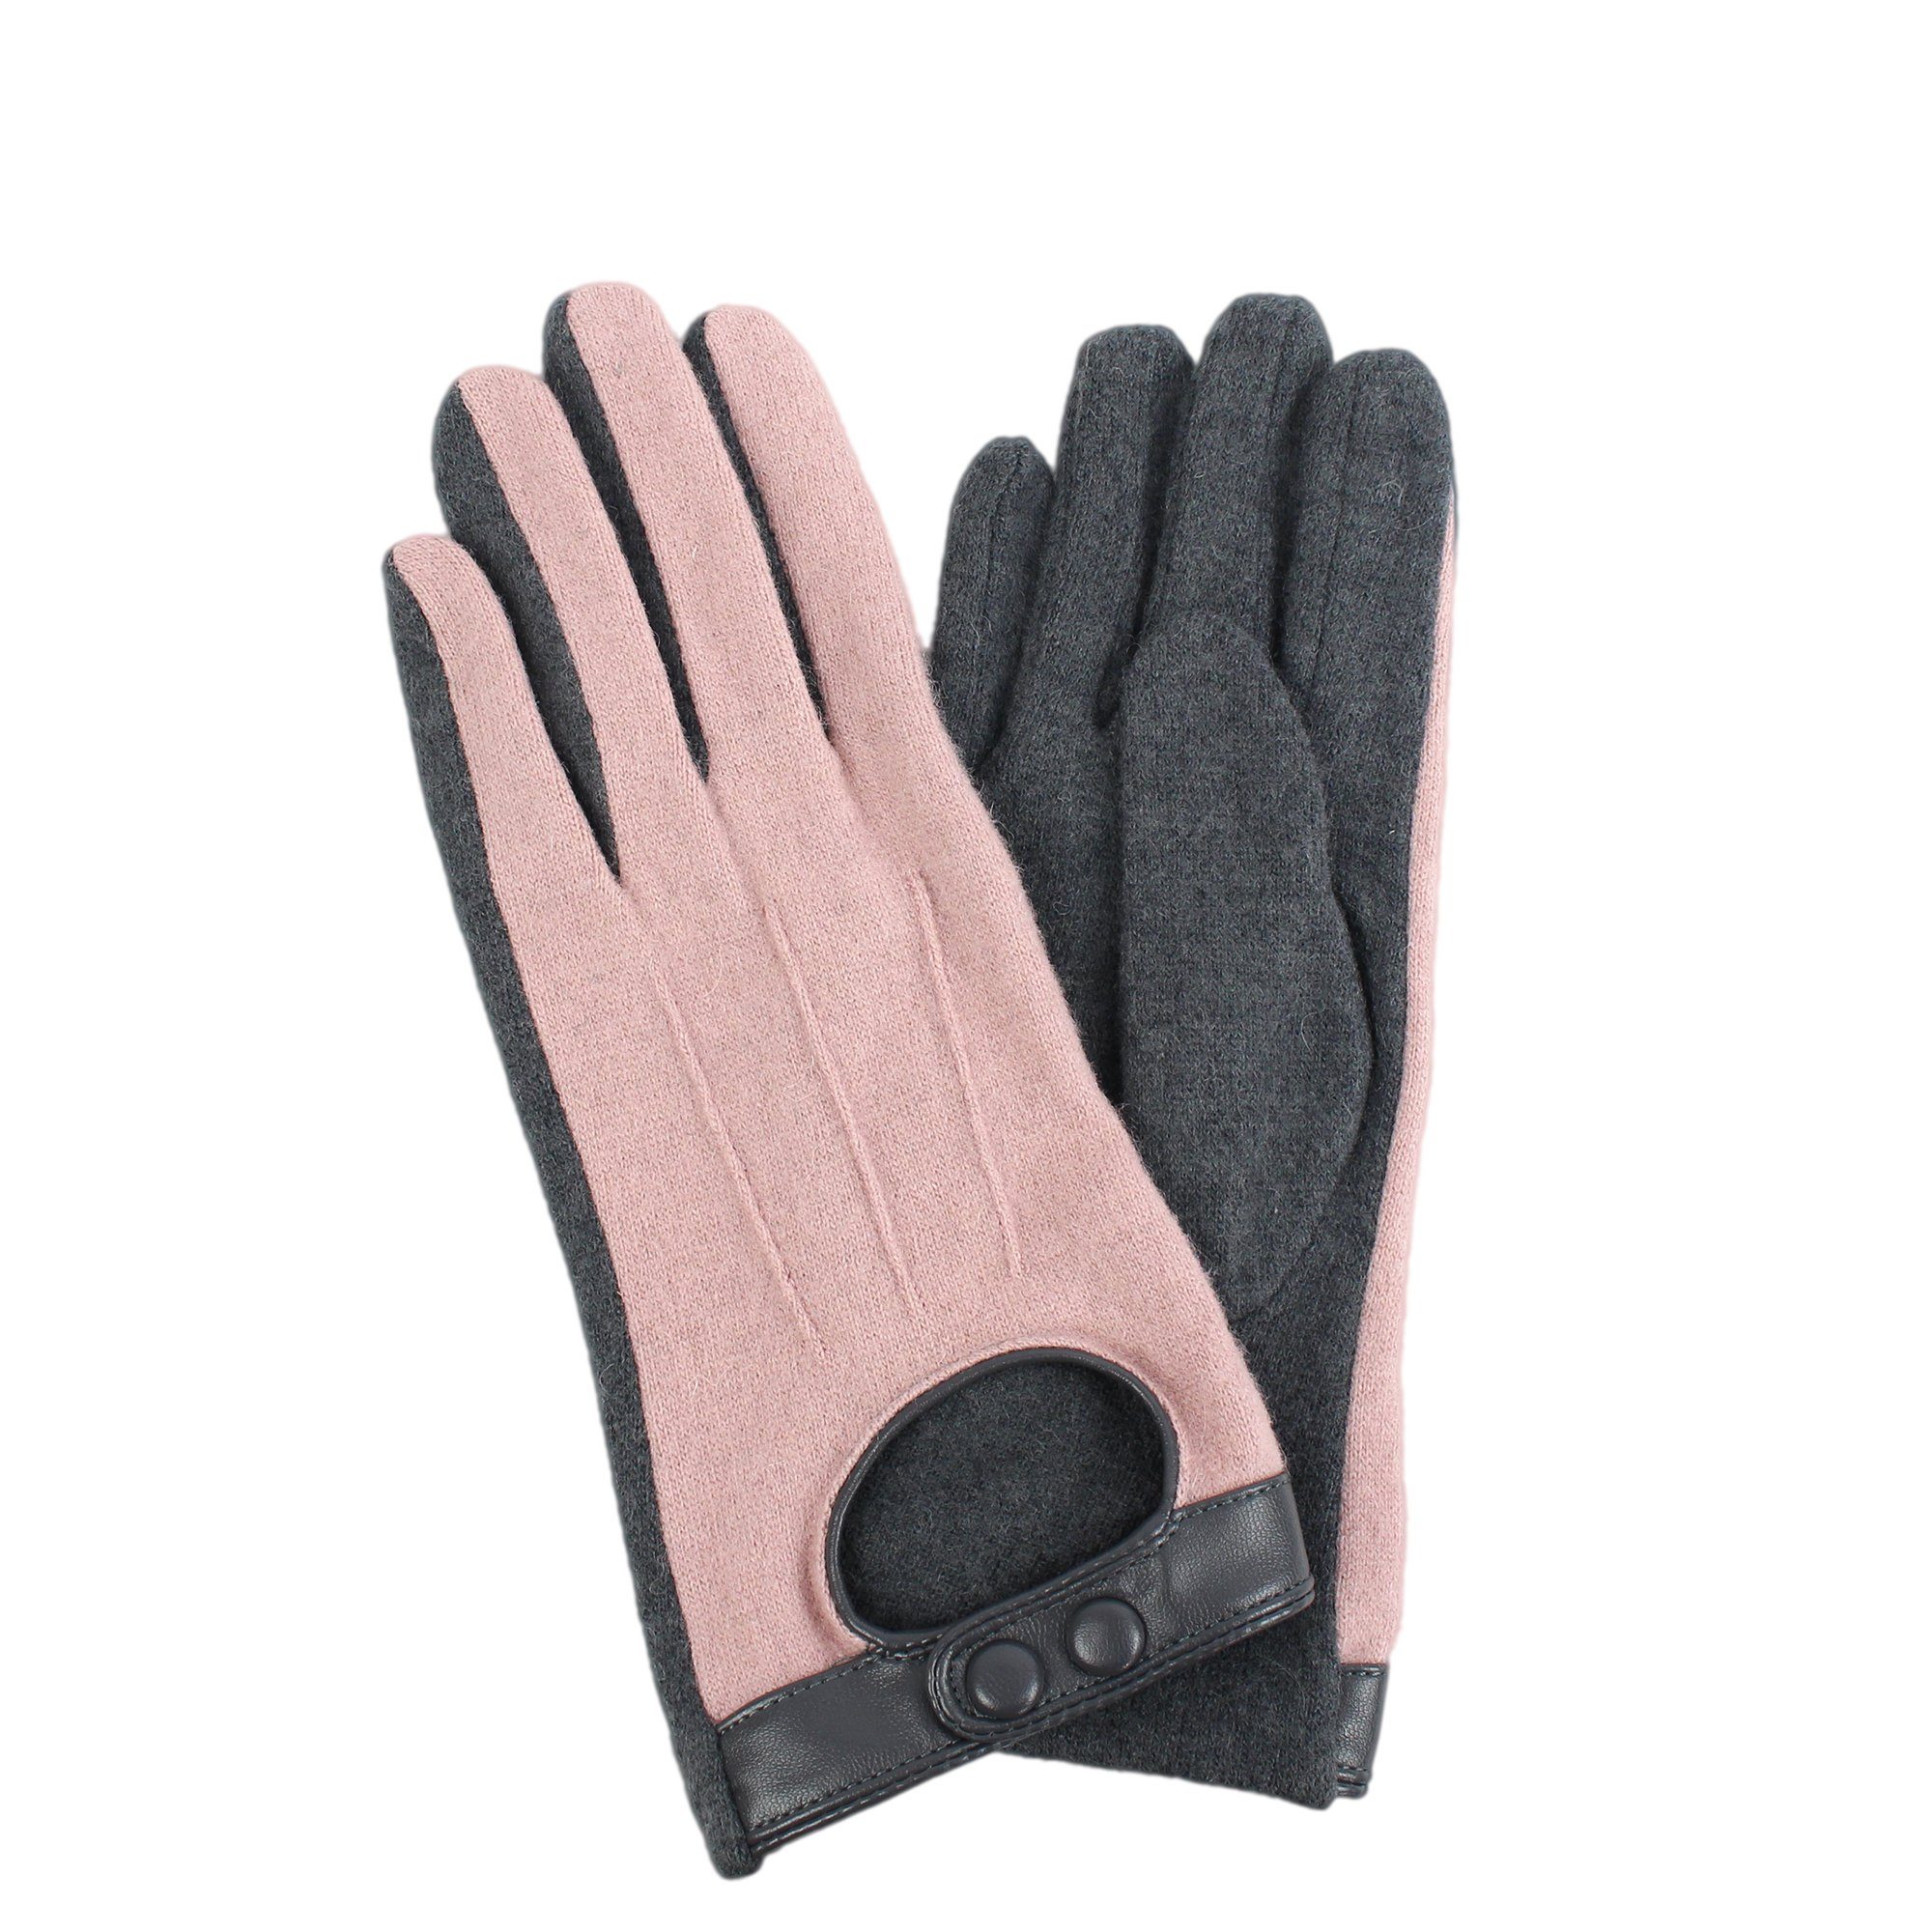 Die supergünstigen Neuerscheinungen dieser Woche ZEBRO Fleecehandschuhe Handschuhe rosa